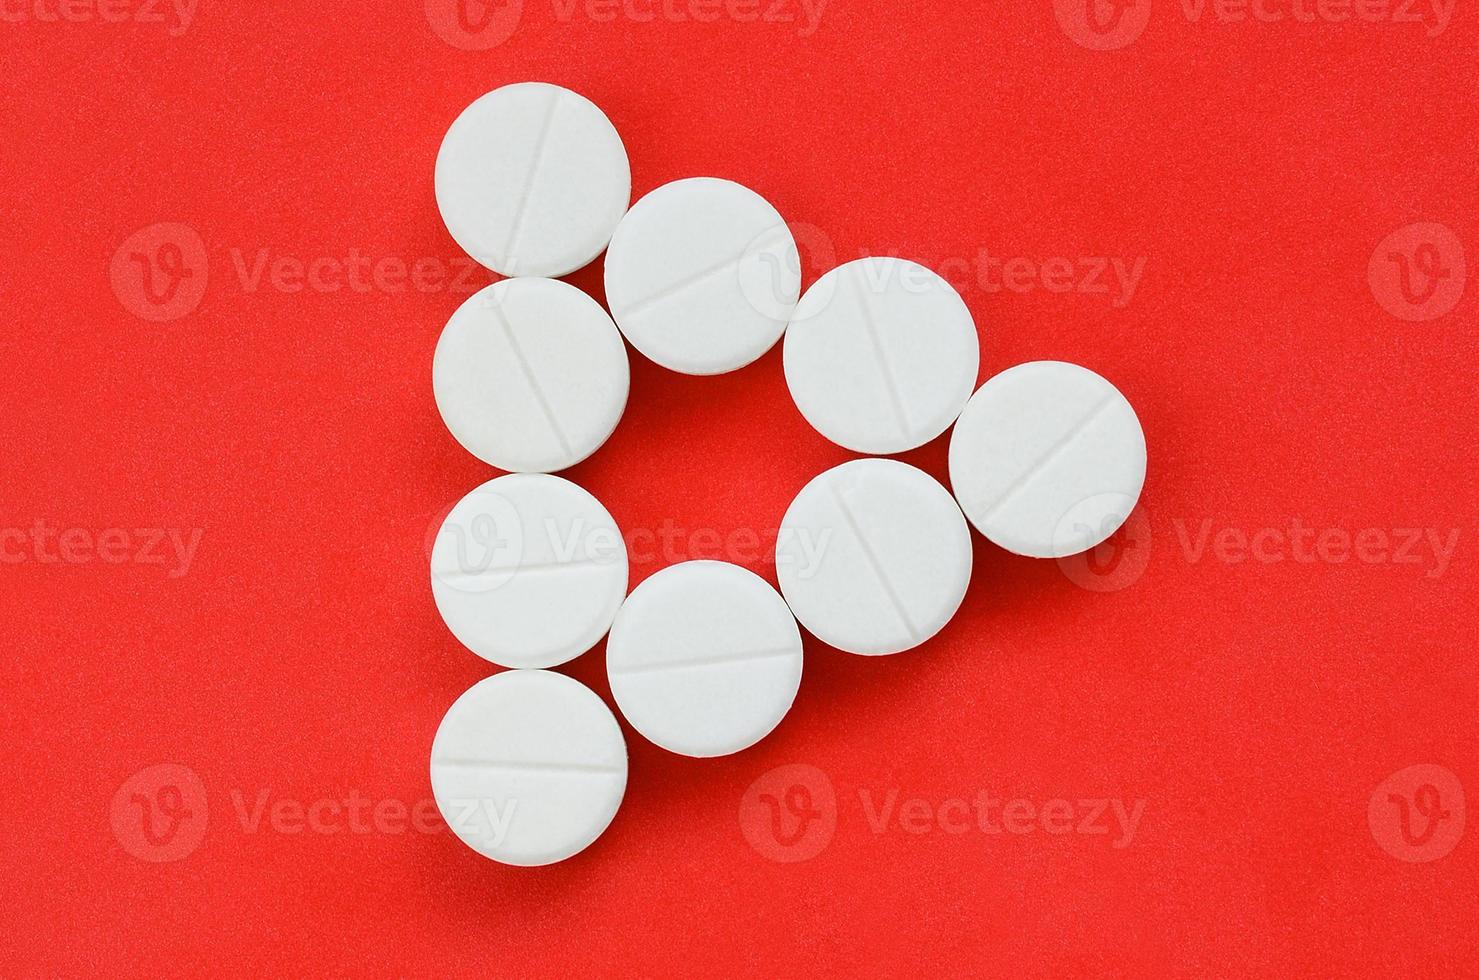 flera vit tabletter lögn på en ljus röd bakgrund i de form av ett även triangel. bakgrund bild på medicin och farmaceutisk ämnen foto